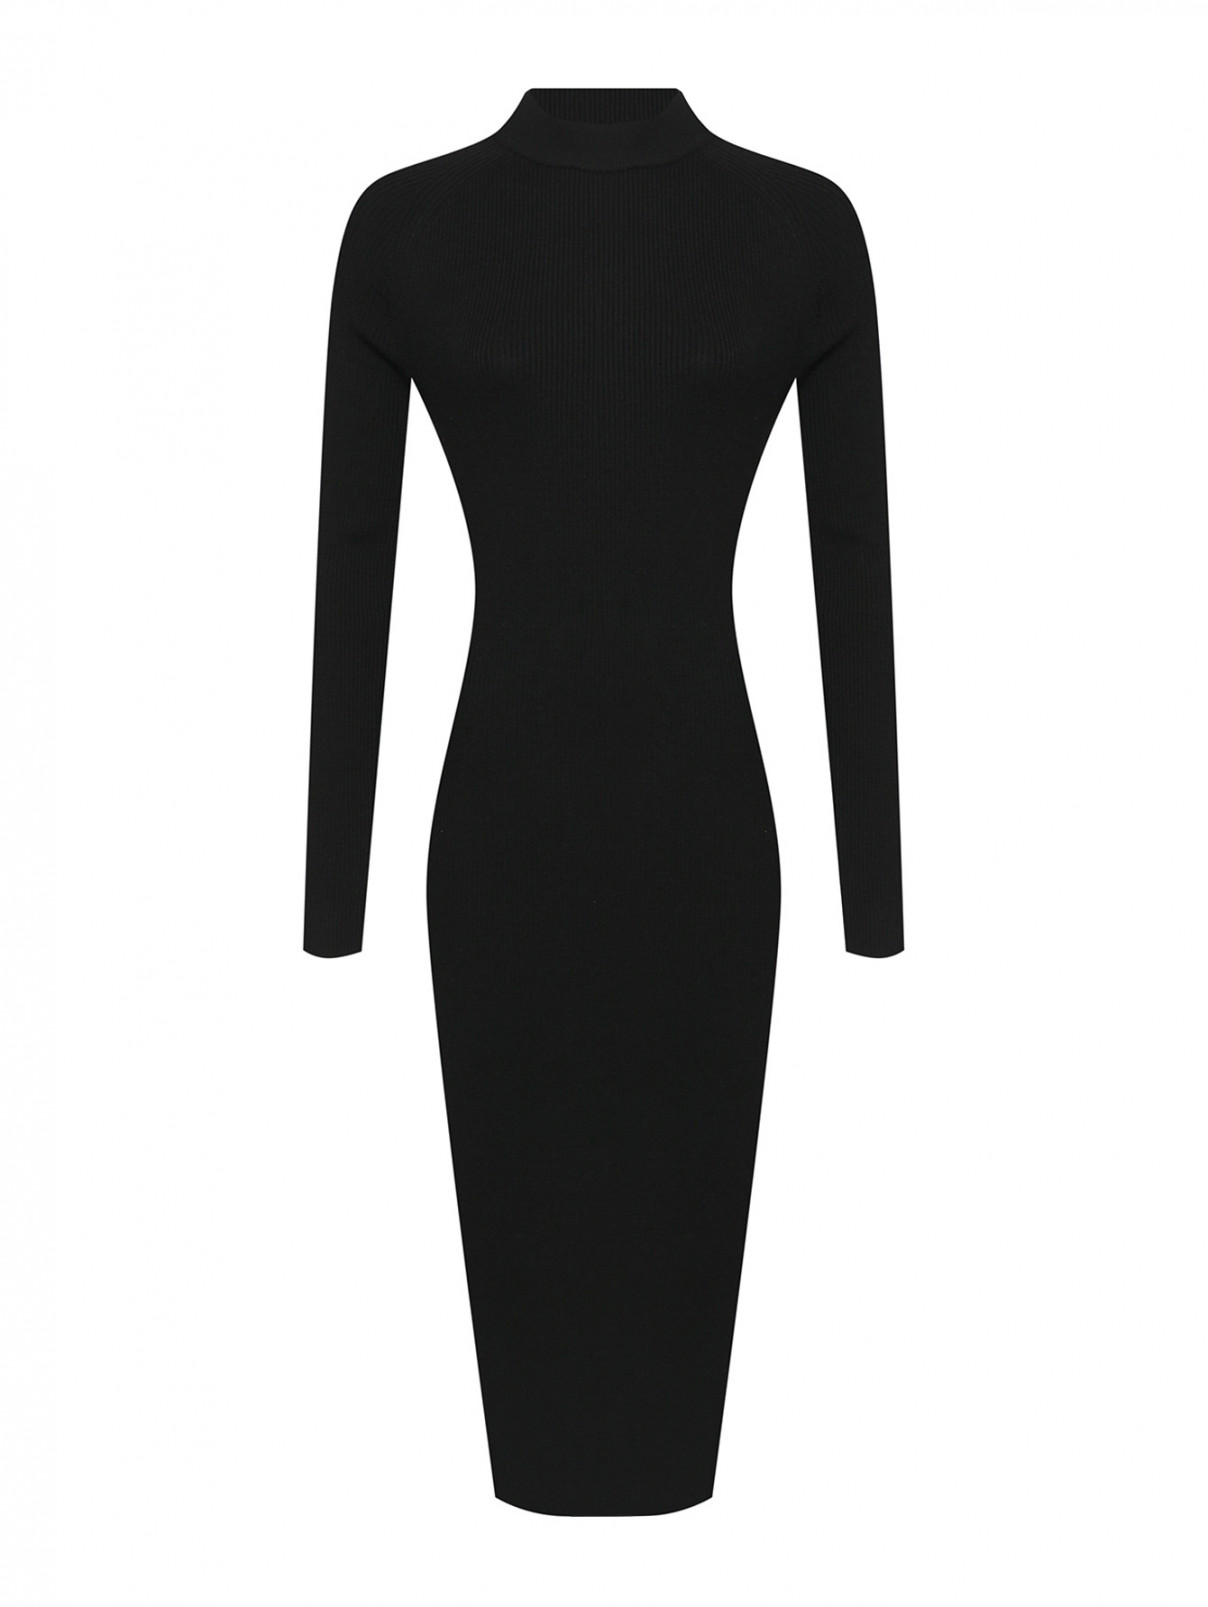 Платье-водолазка из шерсти Max Mara  –  Общий вид  – Цвет:  Черный